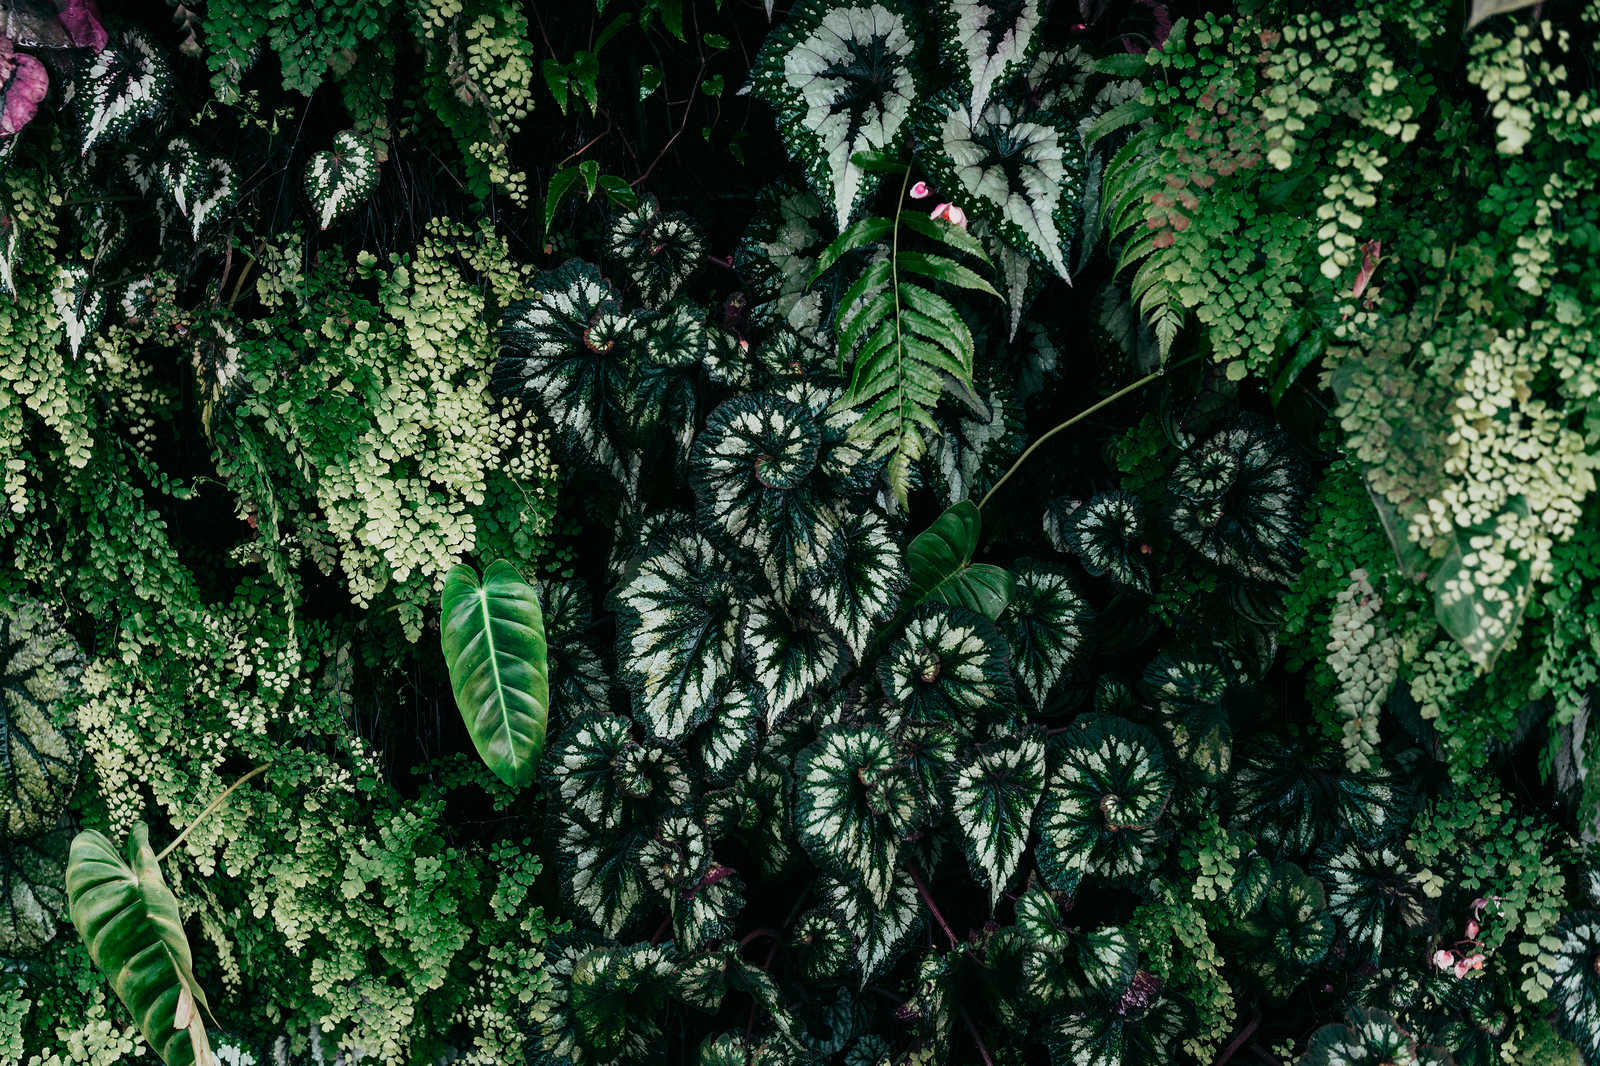             Deep Green 2 - Quadro su tela con foliage, felci e piante pendenti - 1,20 m x 0,80 m
        